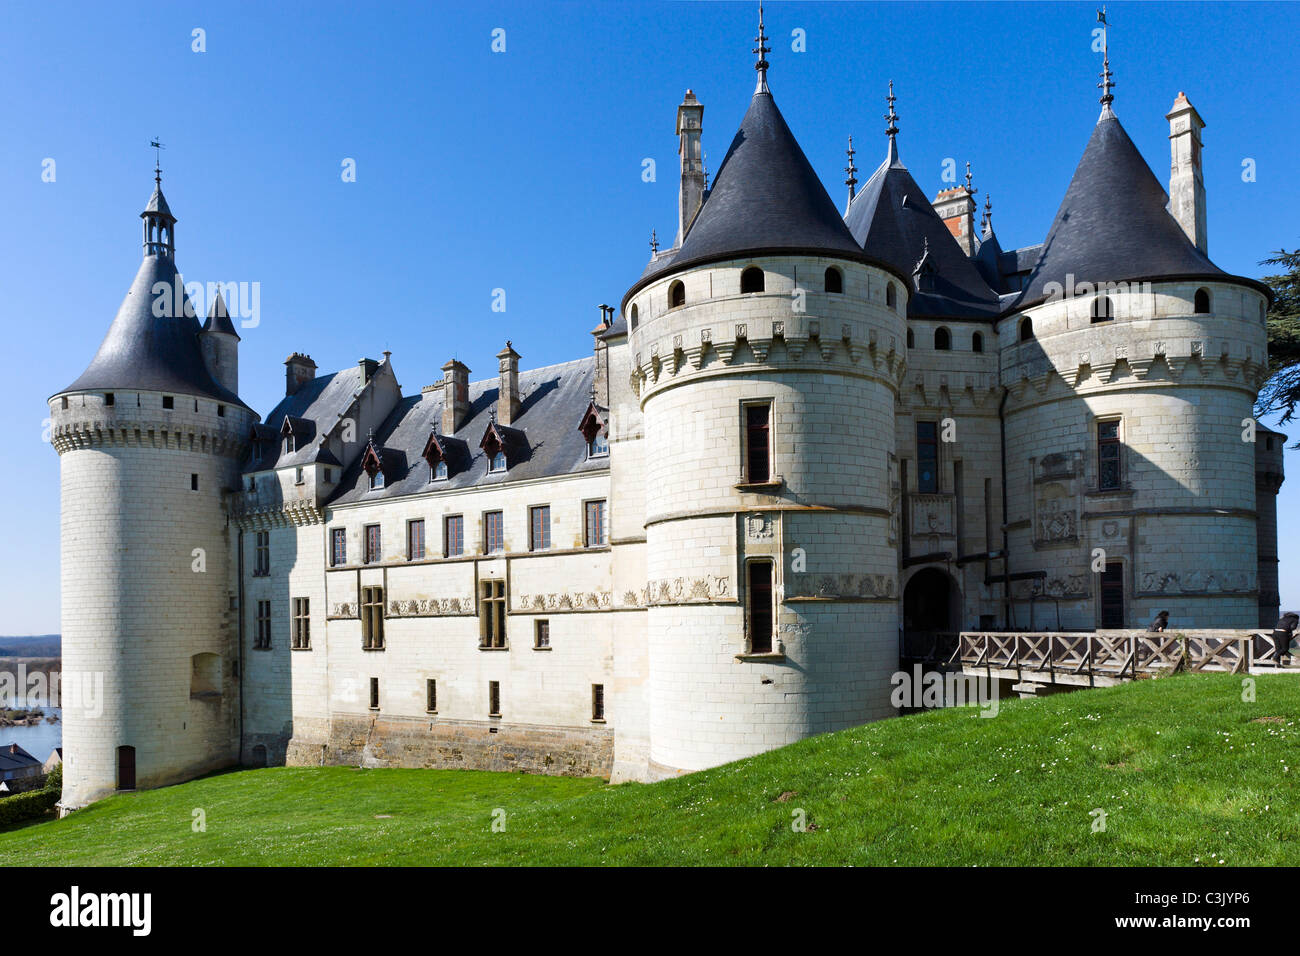 The Chateau de Chaumont, Chaumont sur Loire, Loire Valley, Touraine, France Stock Photo